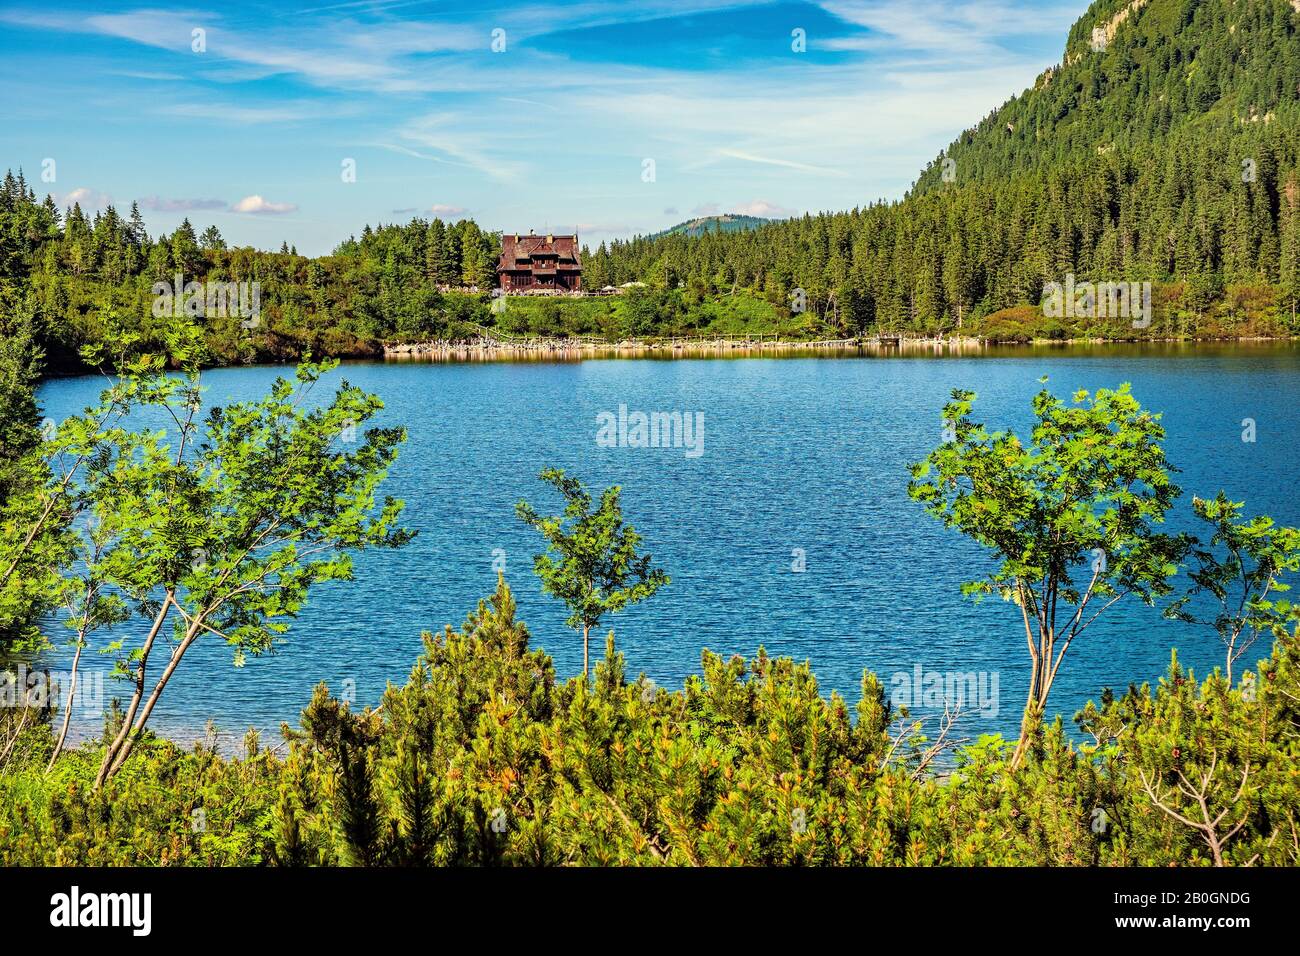 Vue panoramique sur le lac de montagne Morskie Oko entourant la forêt de mélèze, de pins et d'épicéa avec la maison de refuge Schronisko przy Morskim Oku en arrière-plan Banque D'Images